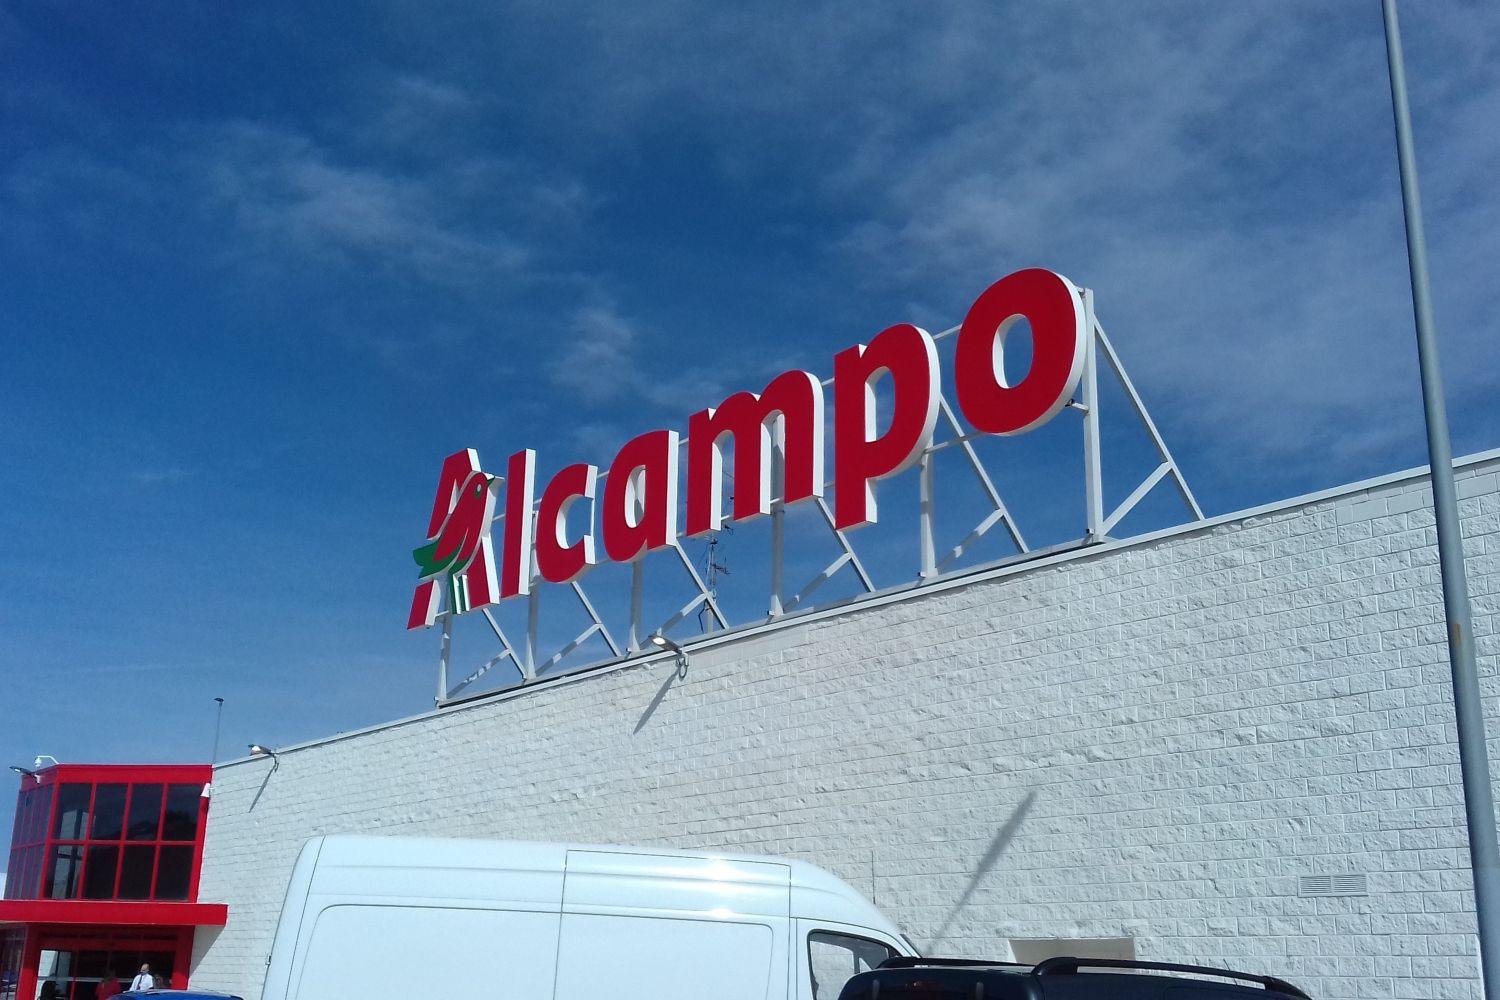 Ofertas de Alcampo: rebaja 500 productos a 1 euro durante este mes